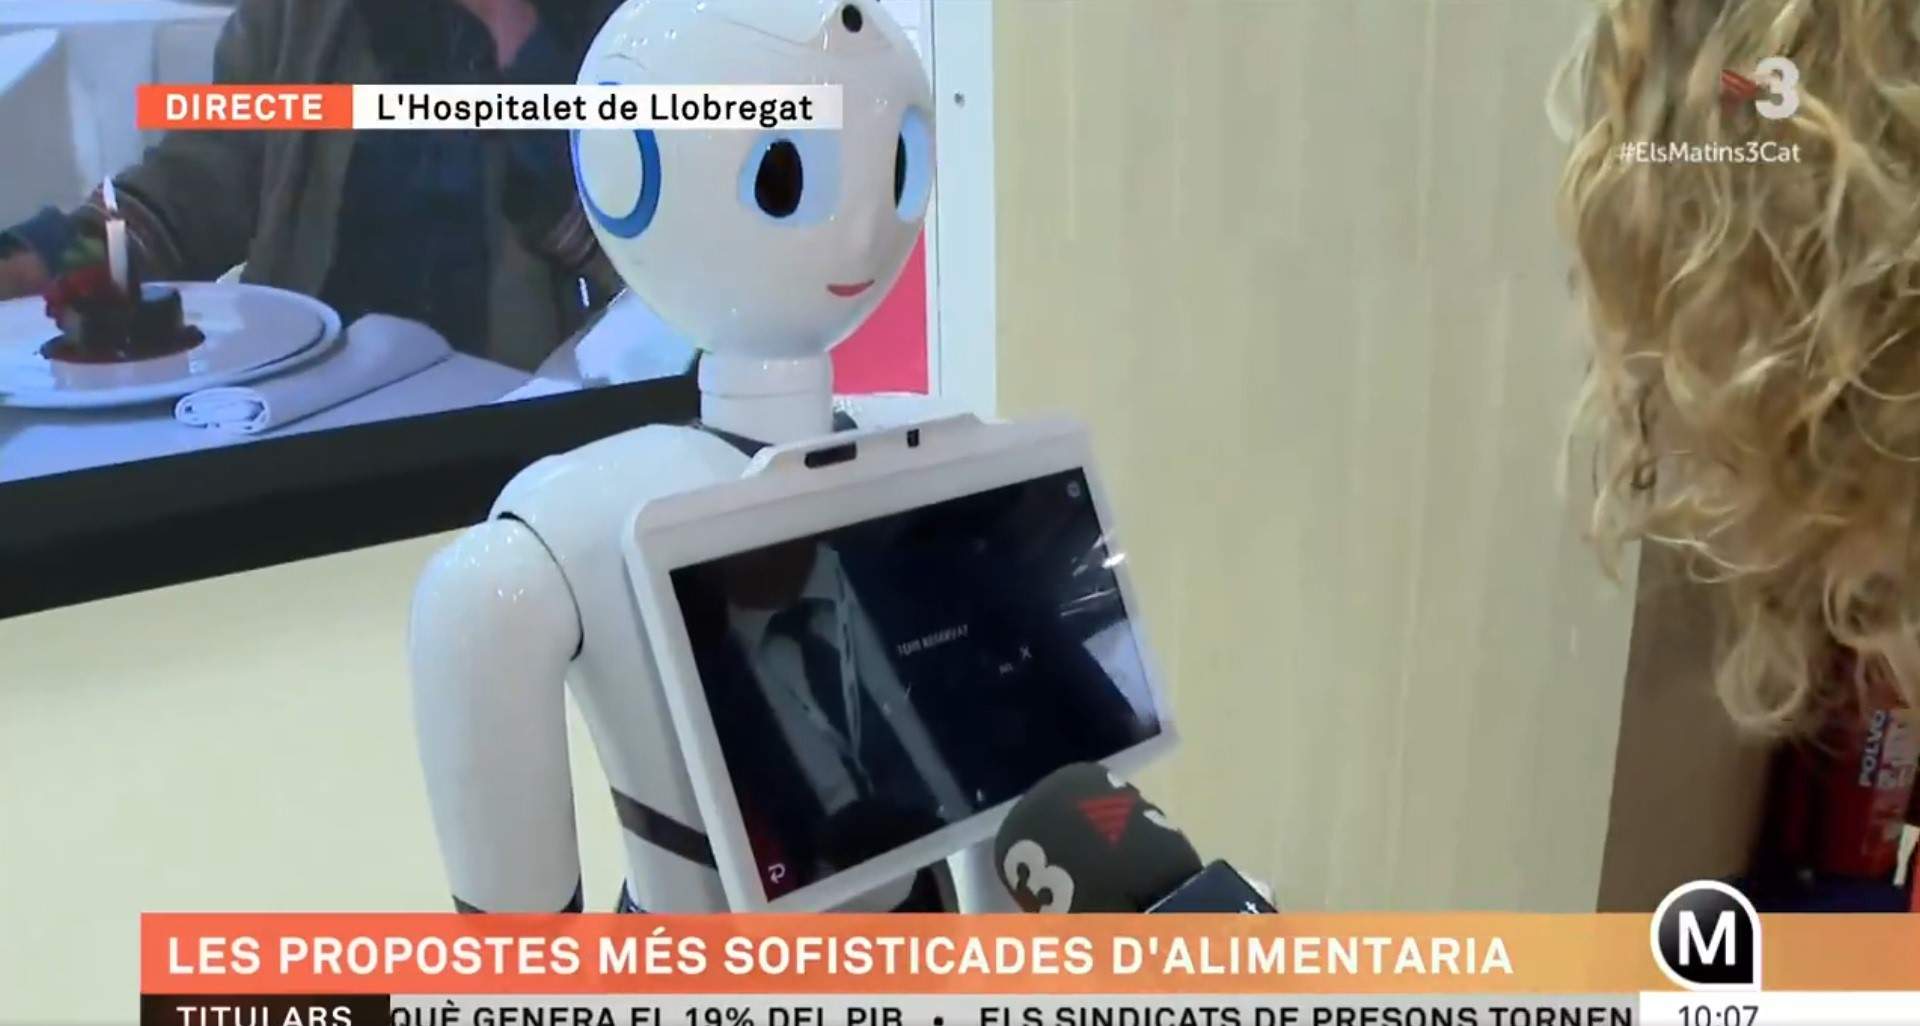 Un robot camarero se 'suicida' en directo: "No sé qué ha pasado"